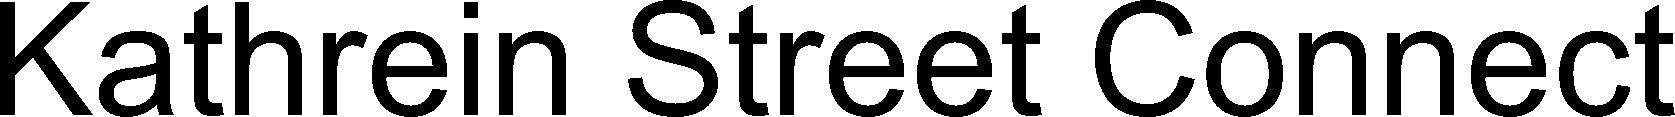 Trademark Logo KATHREIN STREET CONNECT